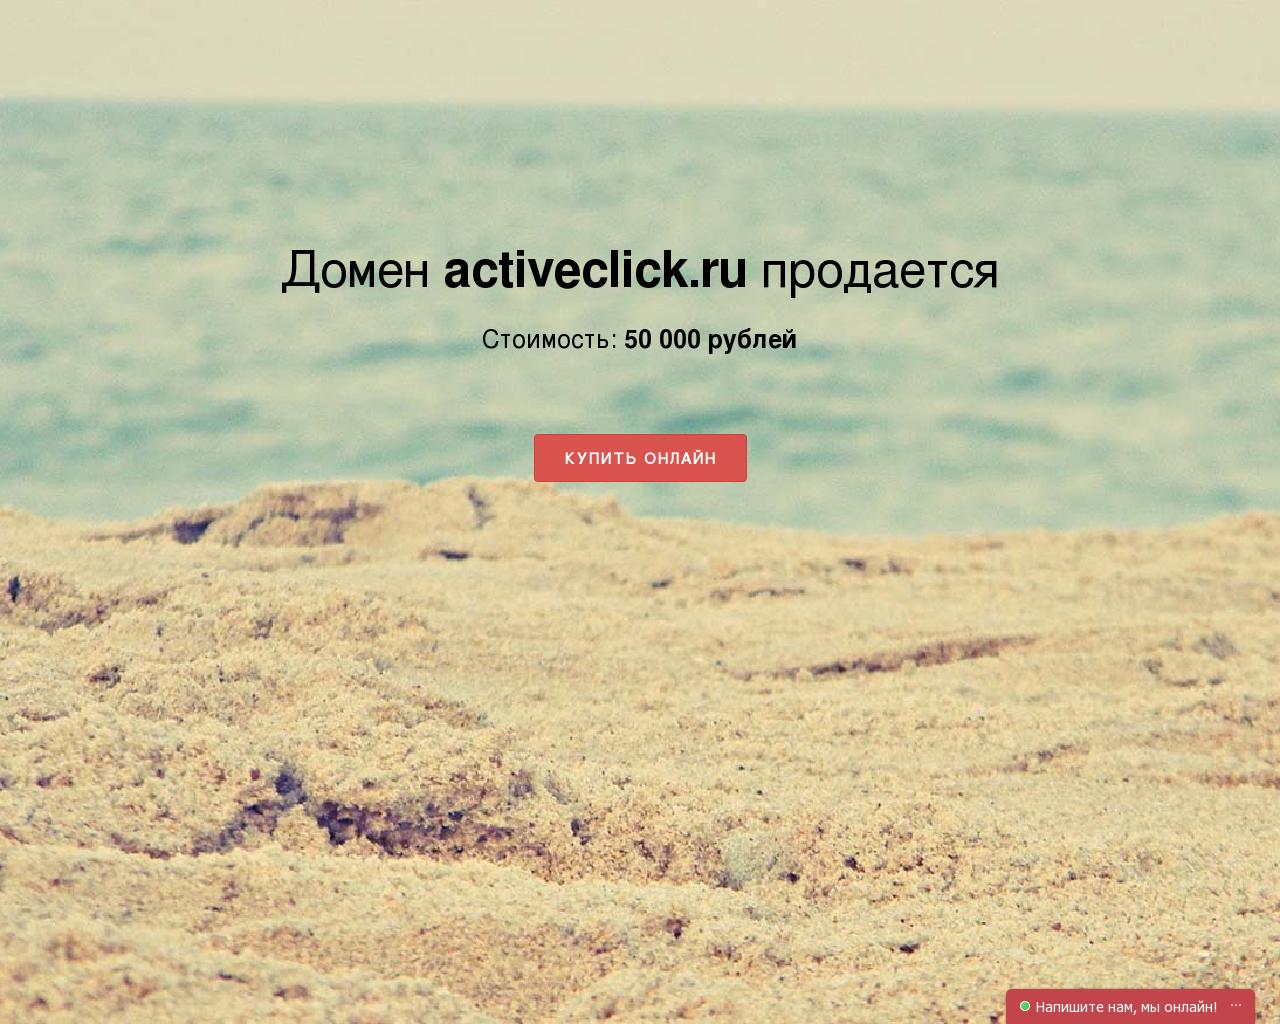 Изображение сайта activeclick.ru в разрешении 1280x1024